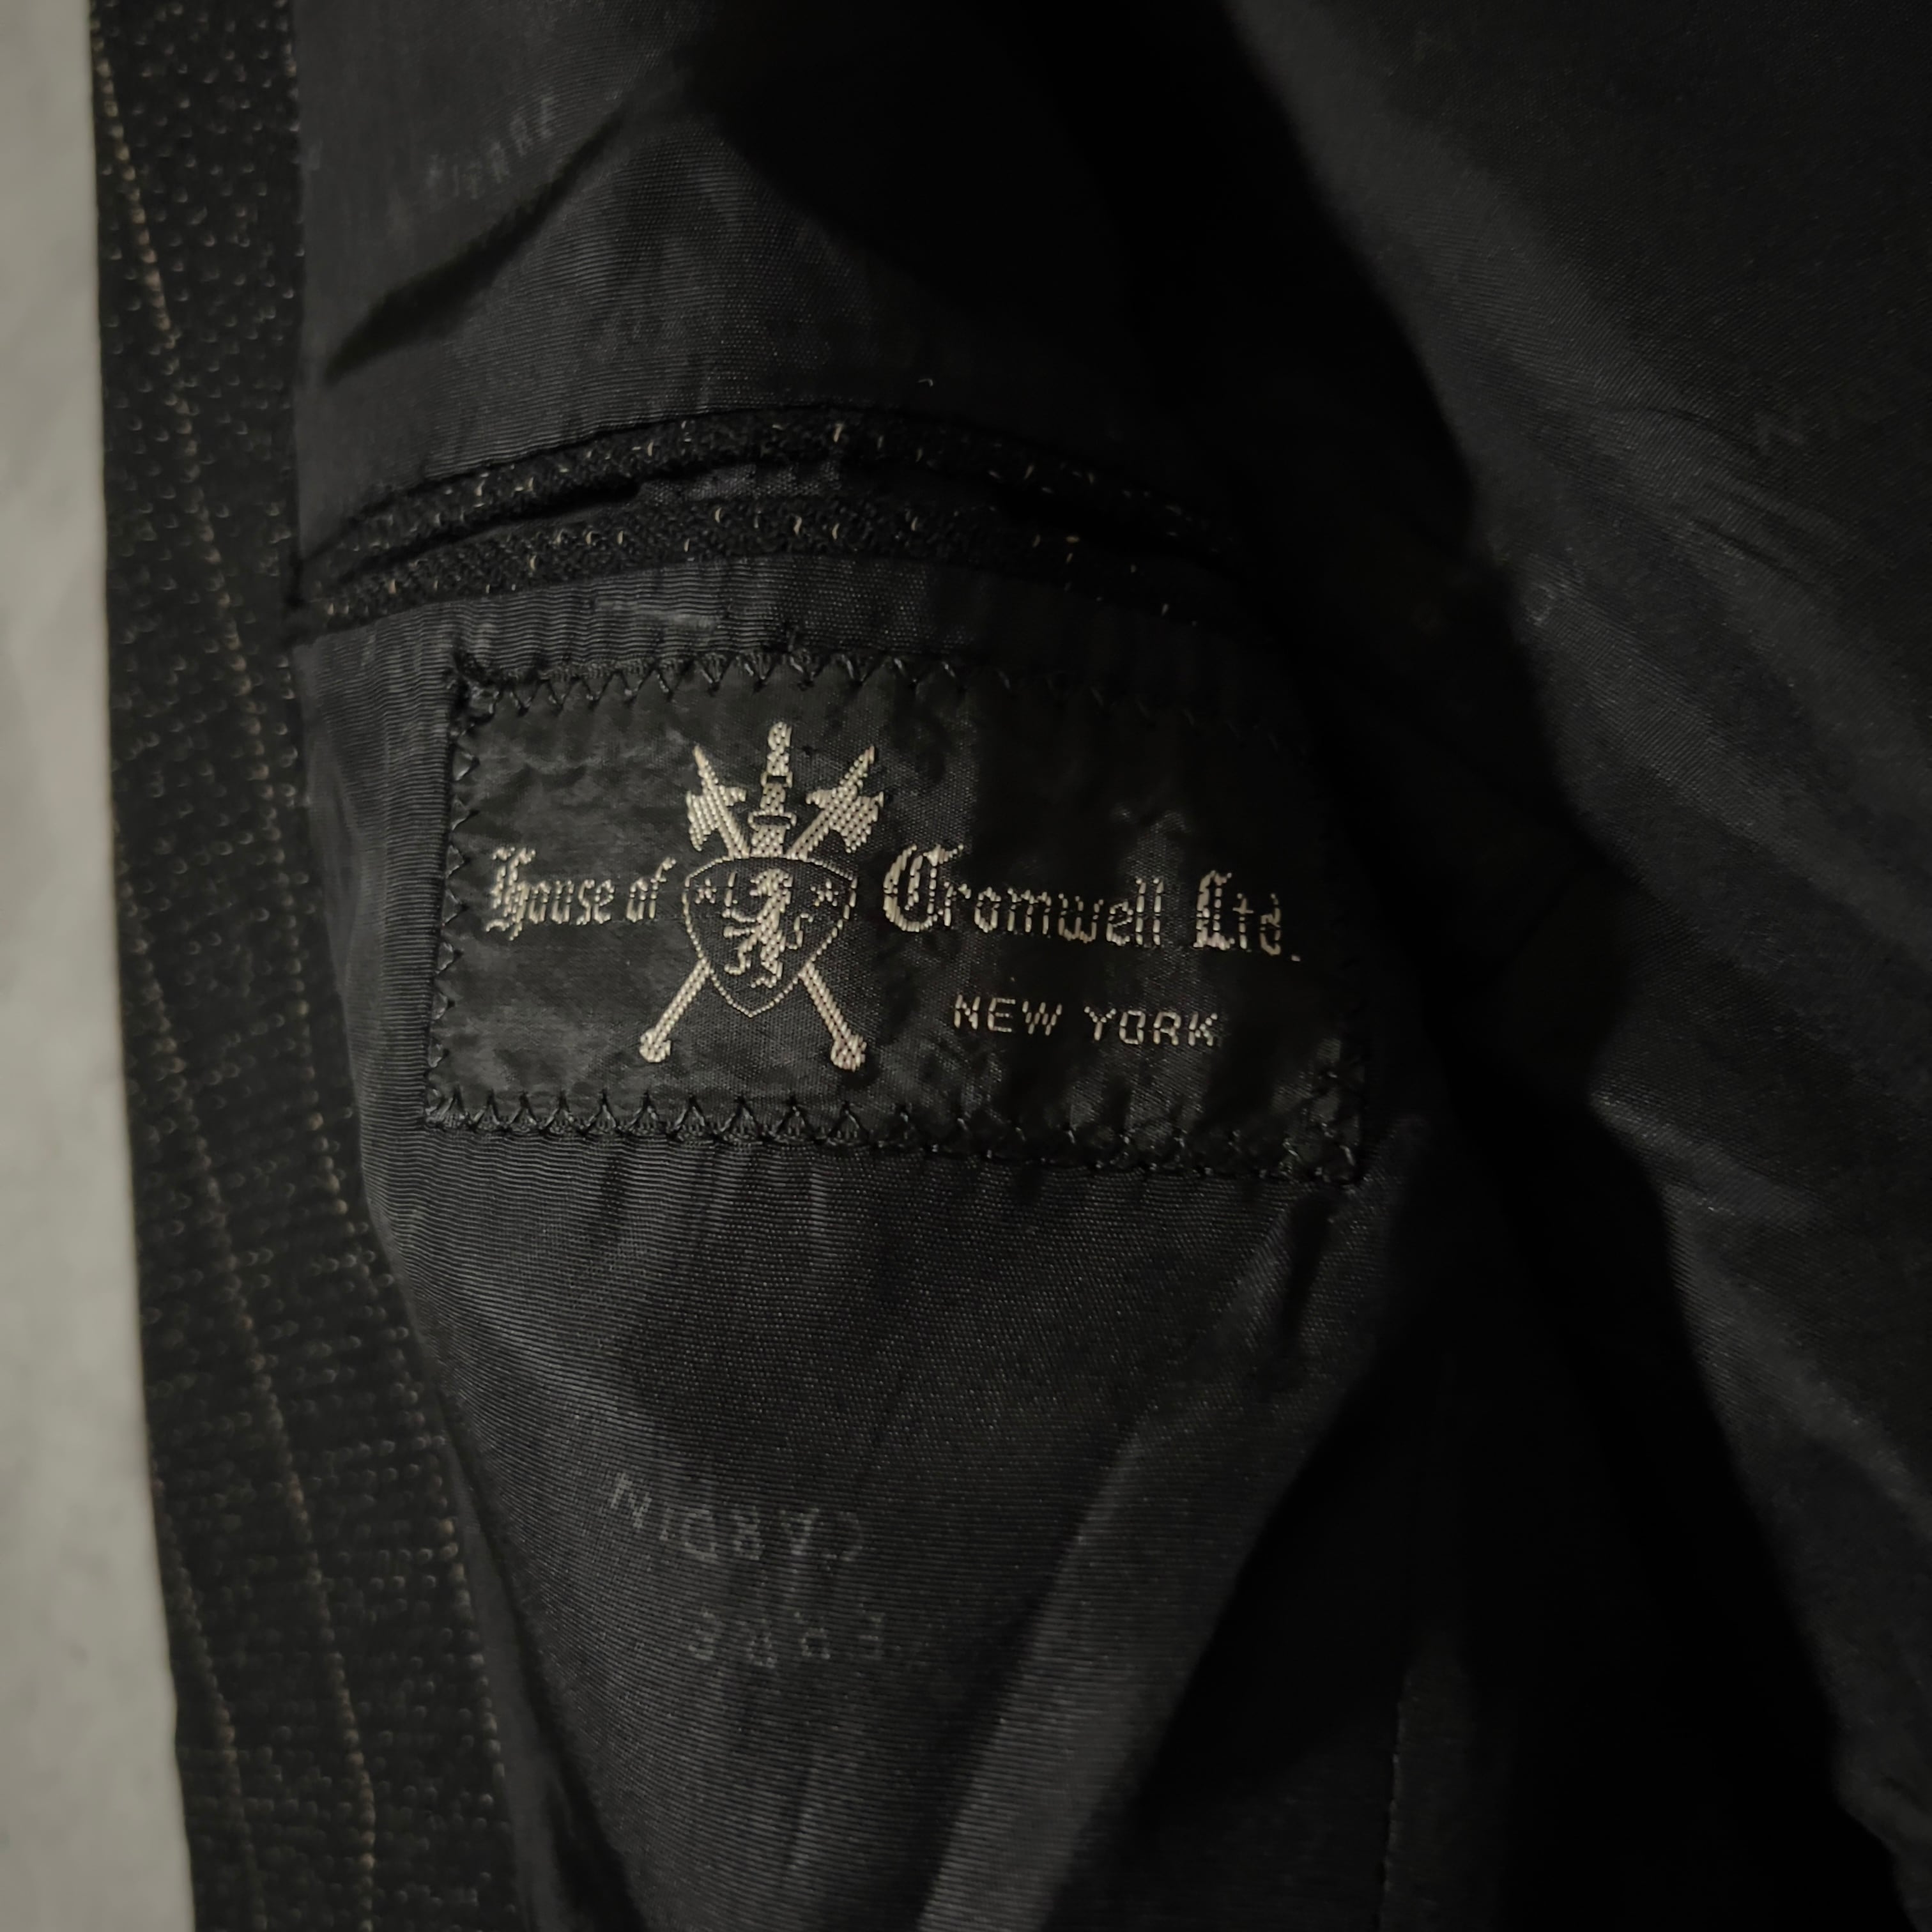 80s “pierre cardin” choke & stripe tailored jacket made in France